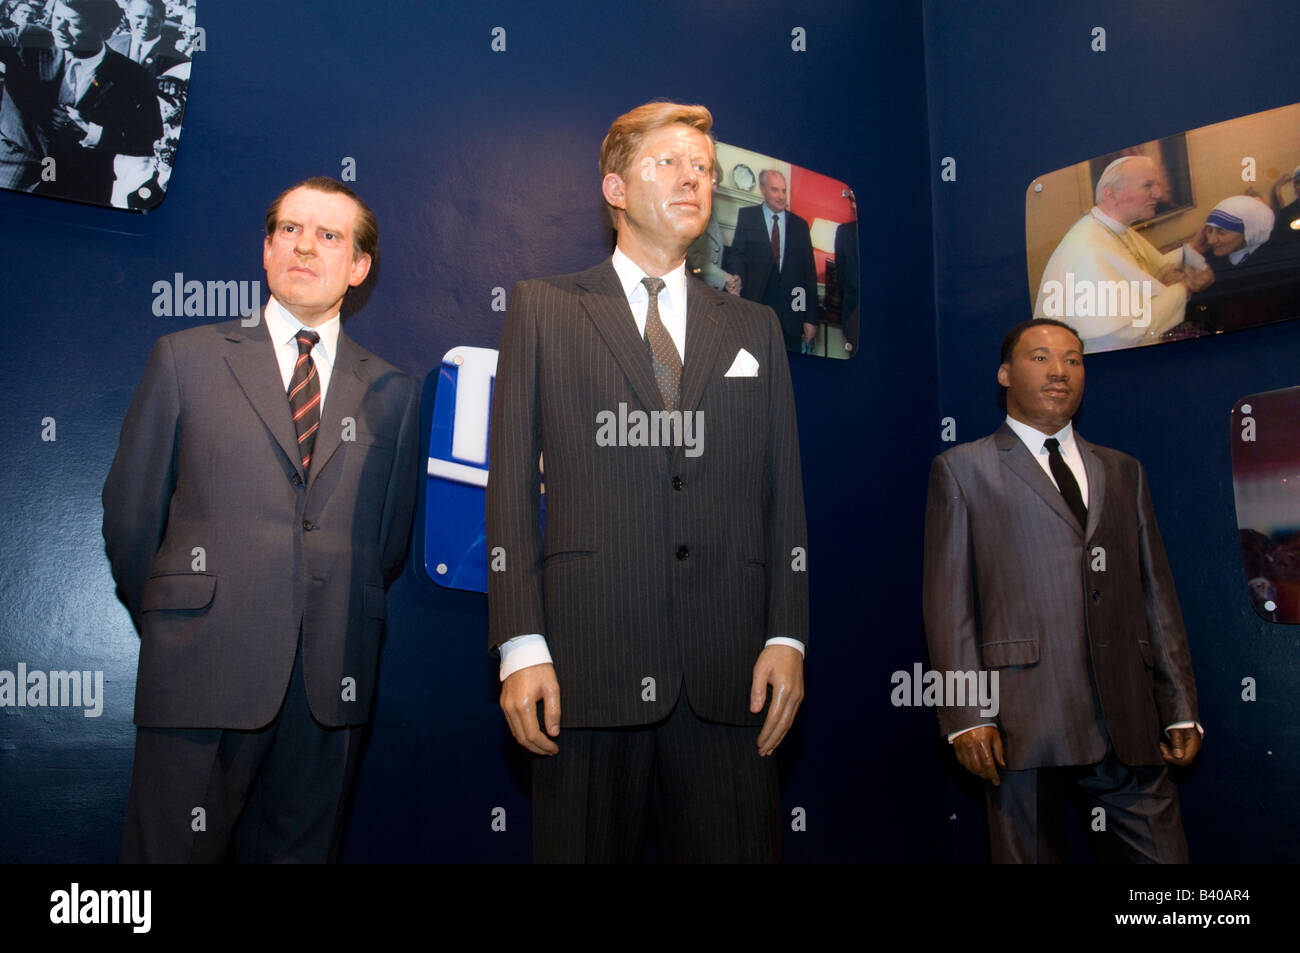 Les modèles de cire de Richard Nixon, John F. Kennedy et Martin Luther King Jr chez Madame Tussauds, London, UK Banque D'Images